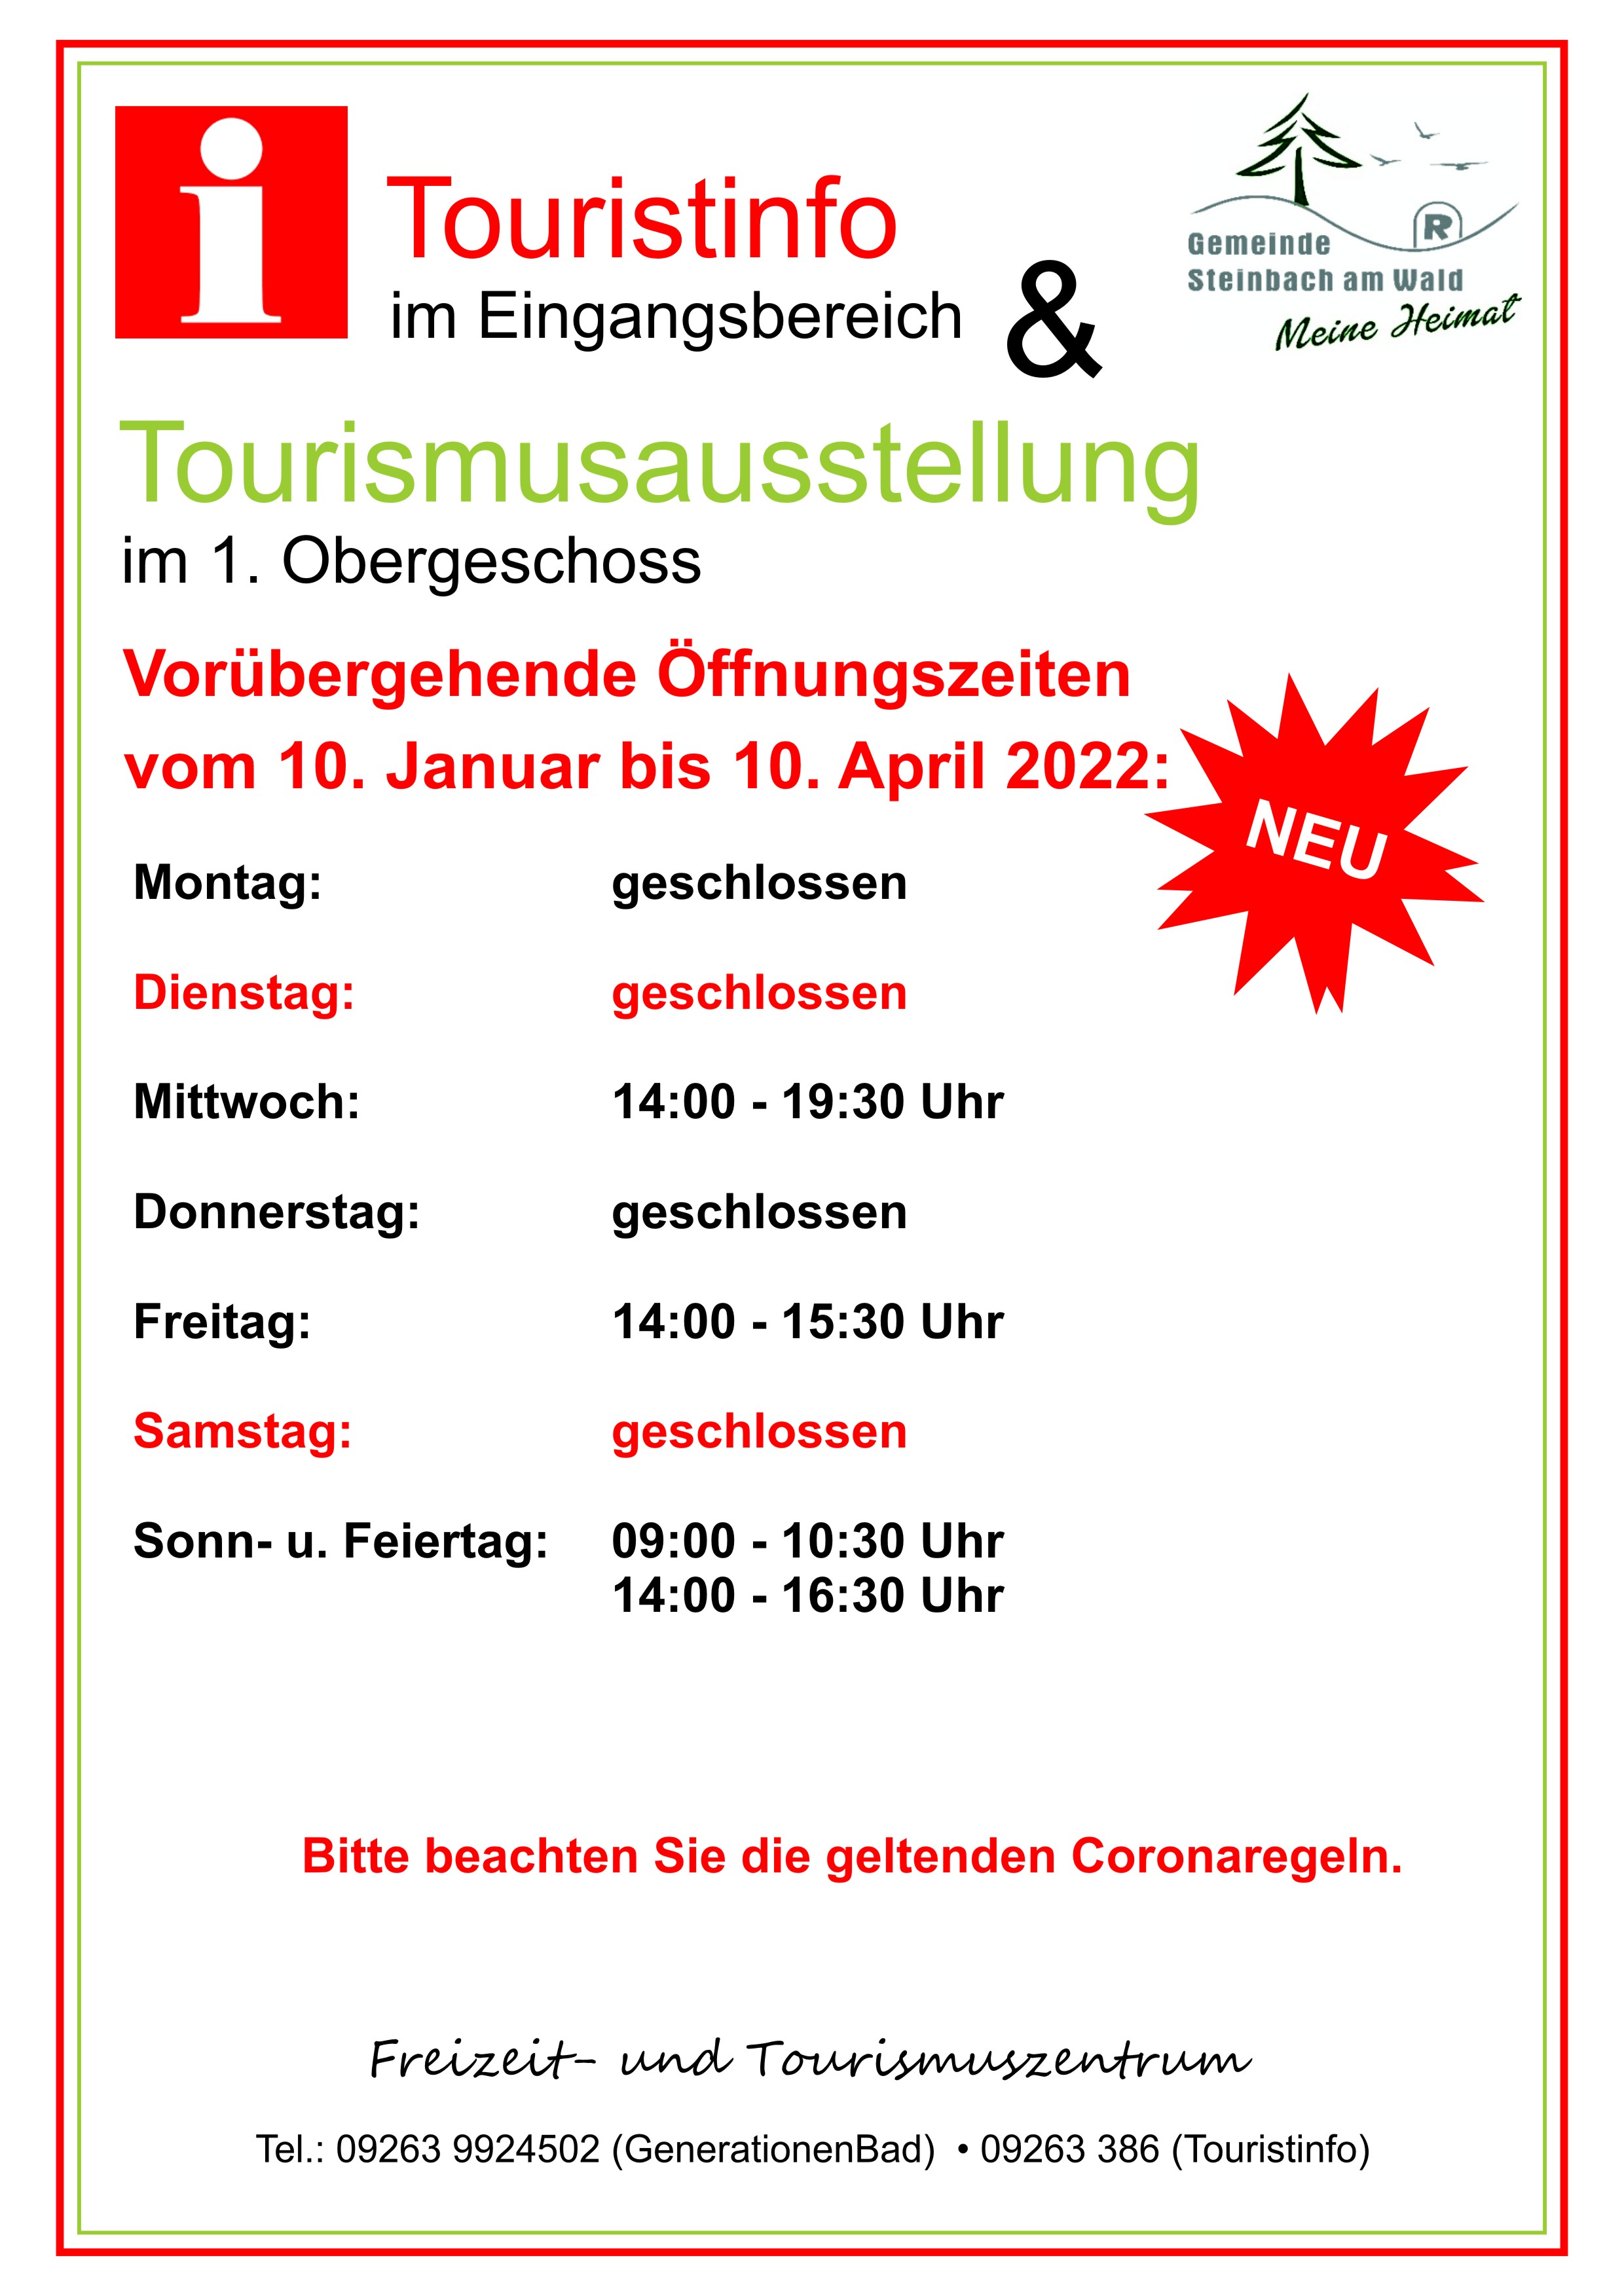 Geänderte Öffnungszeiten der Touristinformation und Tourismusausstellung ab 10. Januar bis 10. April 2022